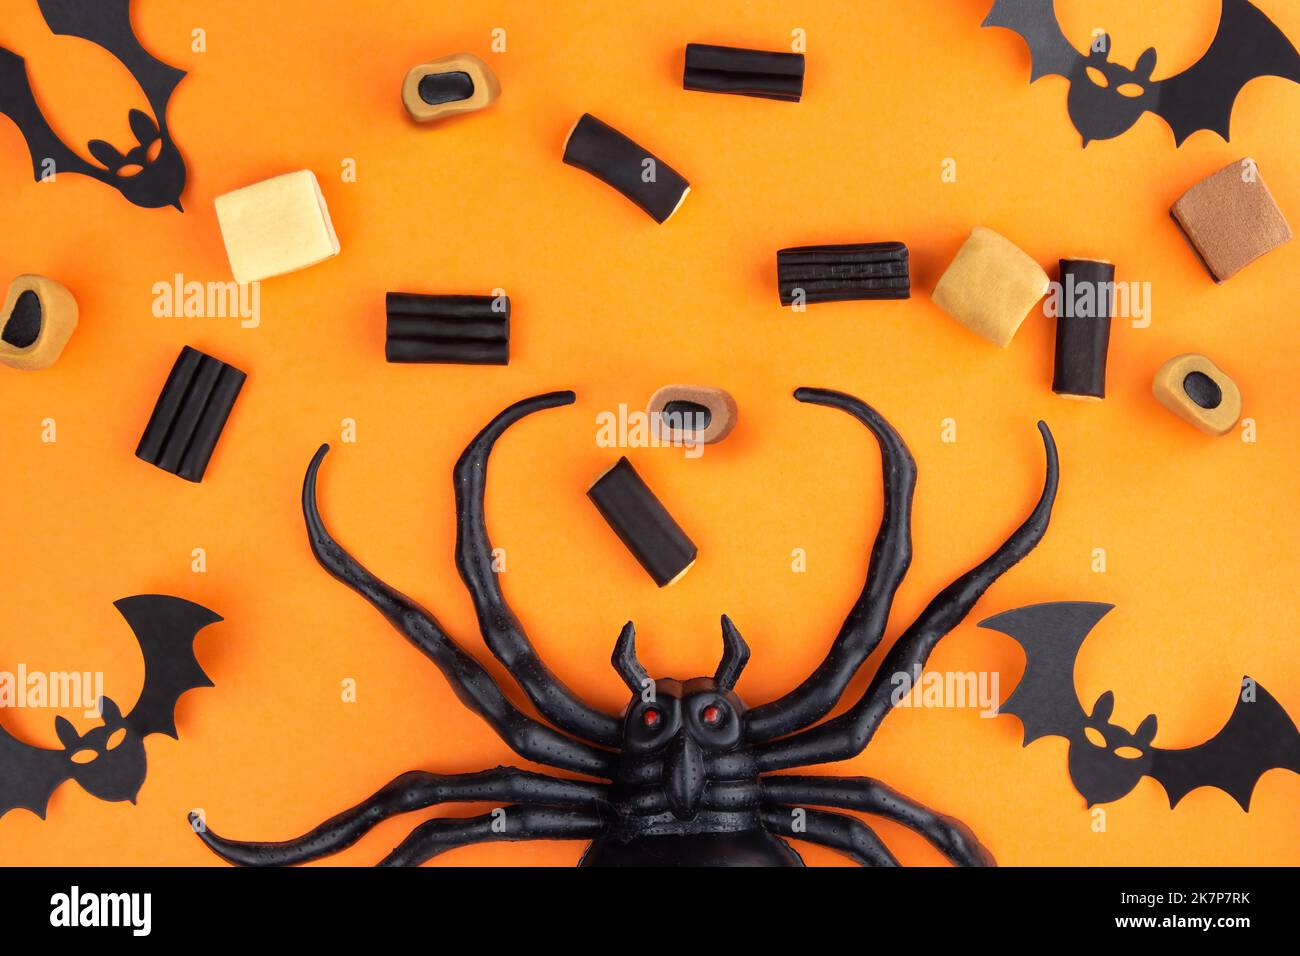 Sobre un fondo anaranjado abajo en el centro de la araña, hay laca, caramelo y caramelos de mascar, en las esquinas de murciélagos tallados en pa negra Foto de stock